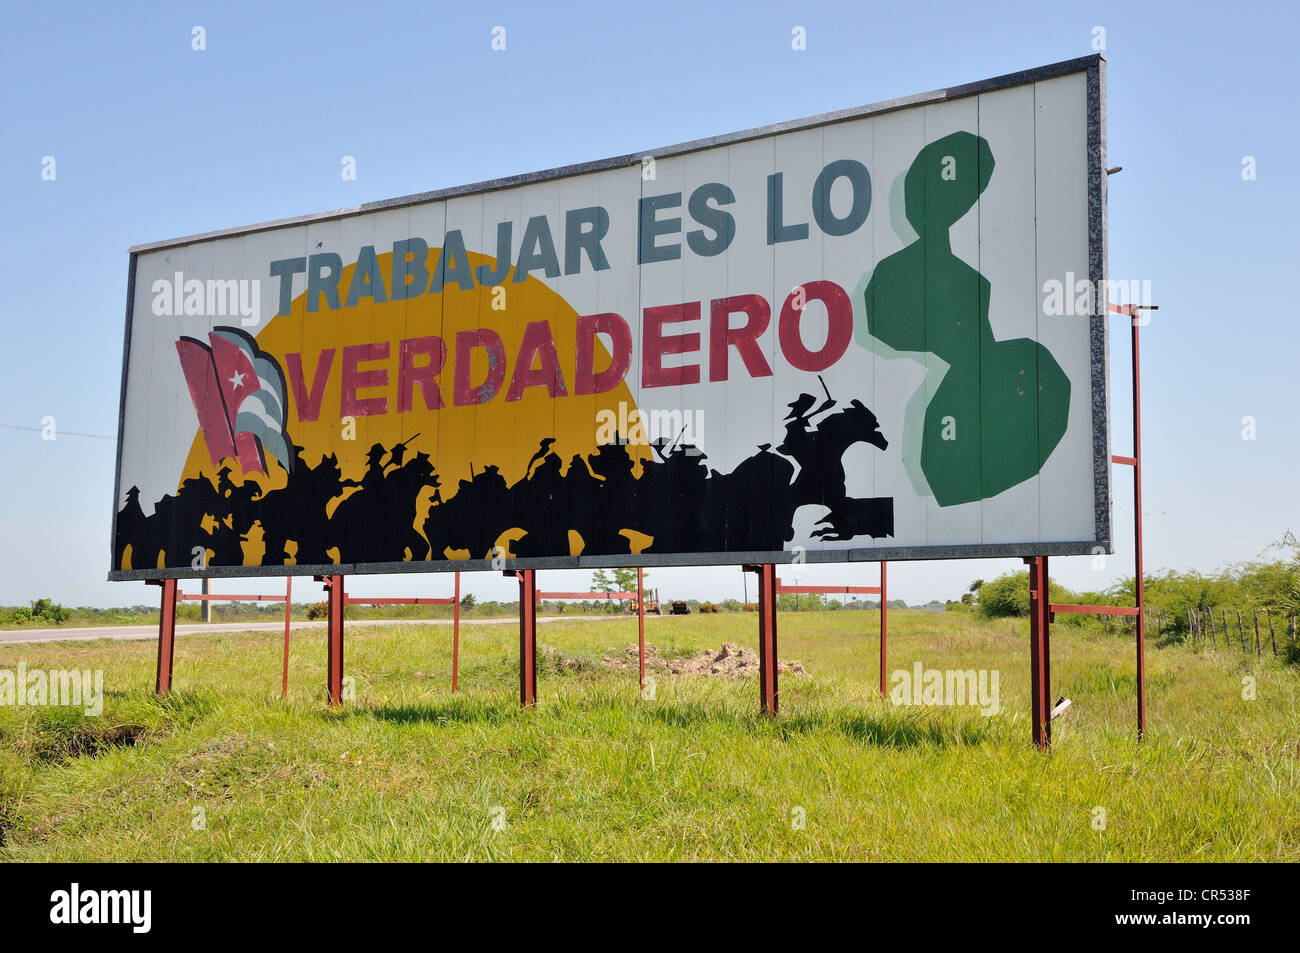 La propagande révolutionnaire, 'es trabajar lo verdadero', espagnol pour "le travail est la vérité', près de l'Camagueey, de Cuba, des Caraïbes Banque D'Images